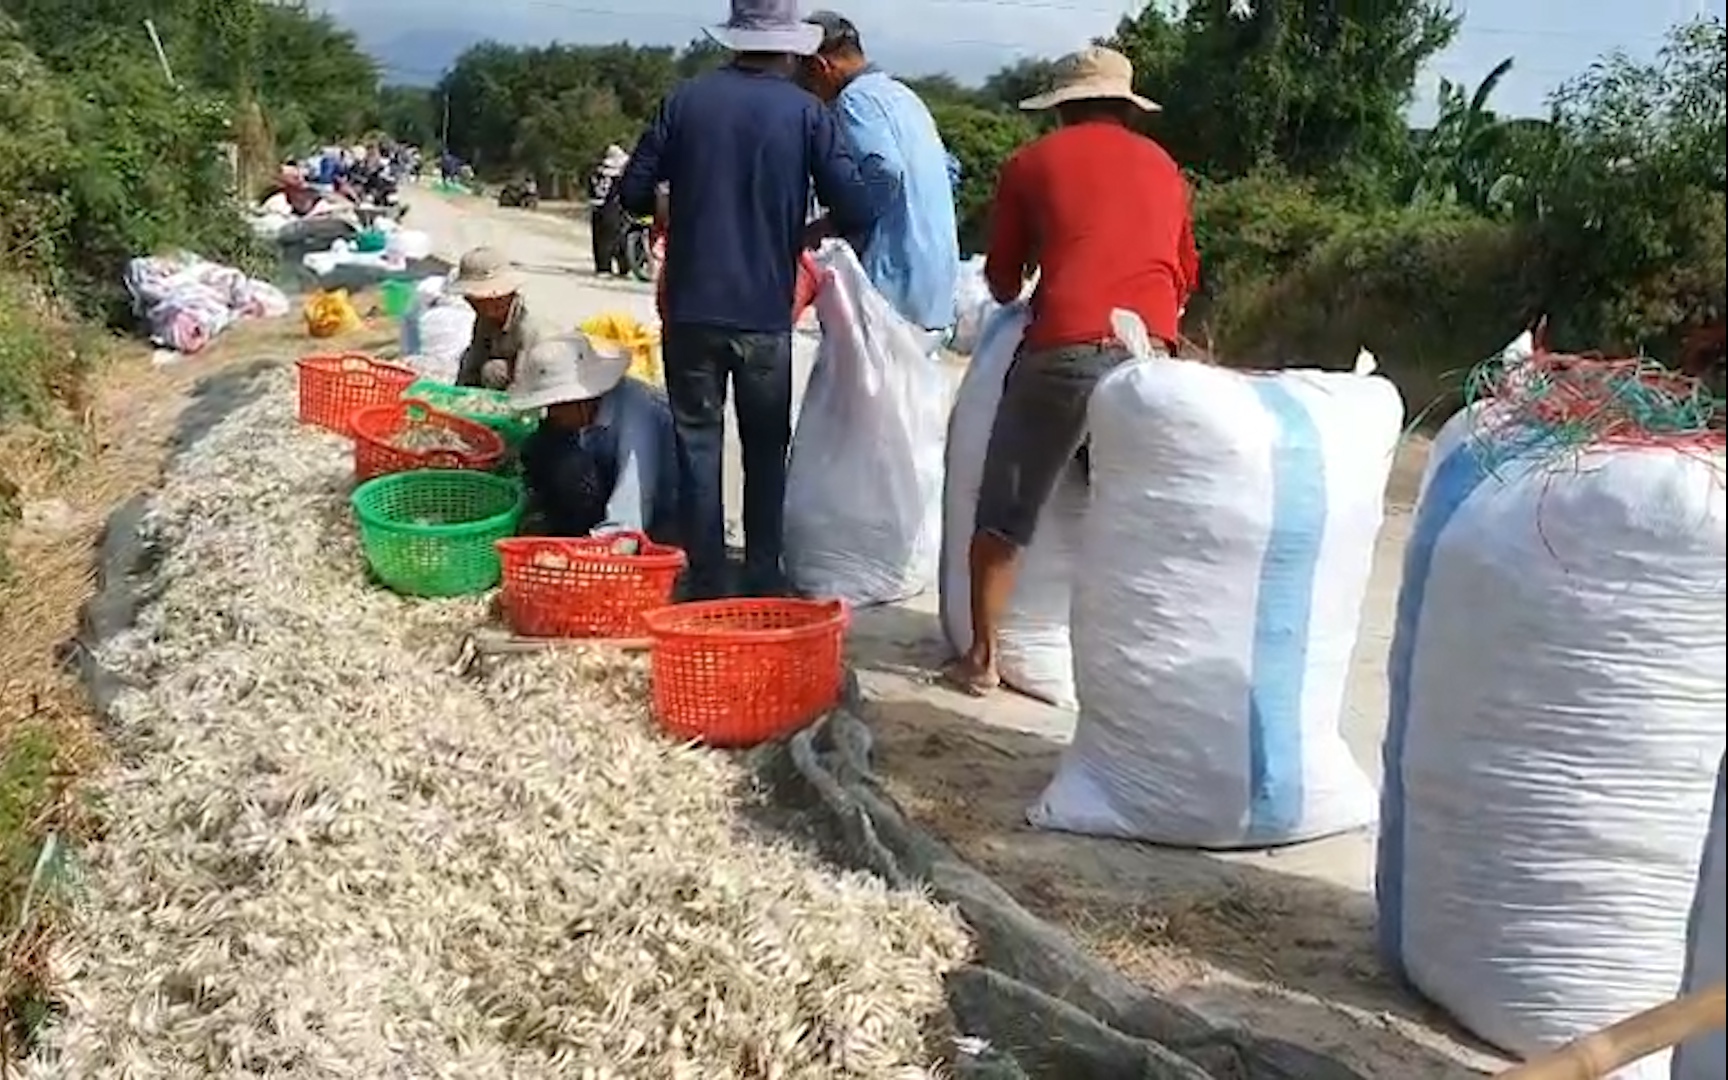 Nông dân Khánh Hòa lo "mất Tết” vì kiệu rớt giá thê thảm